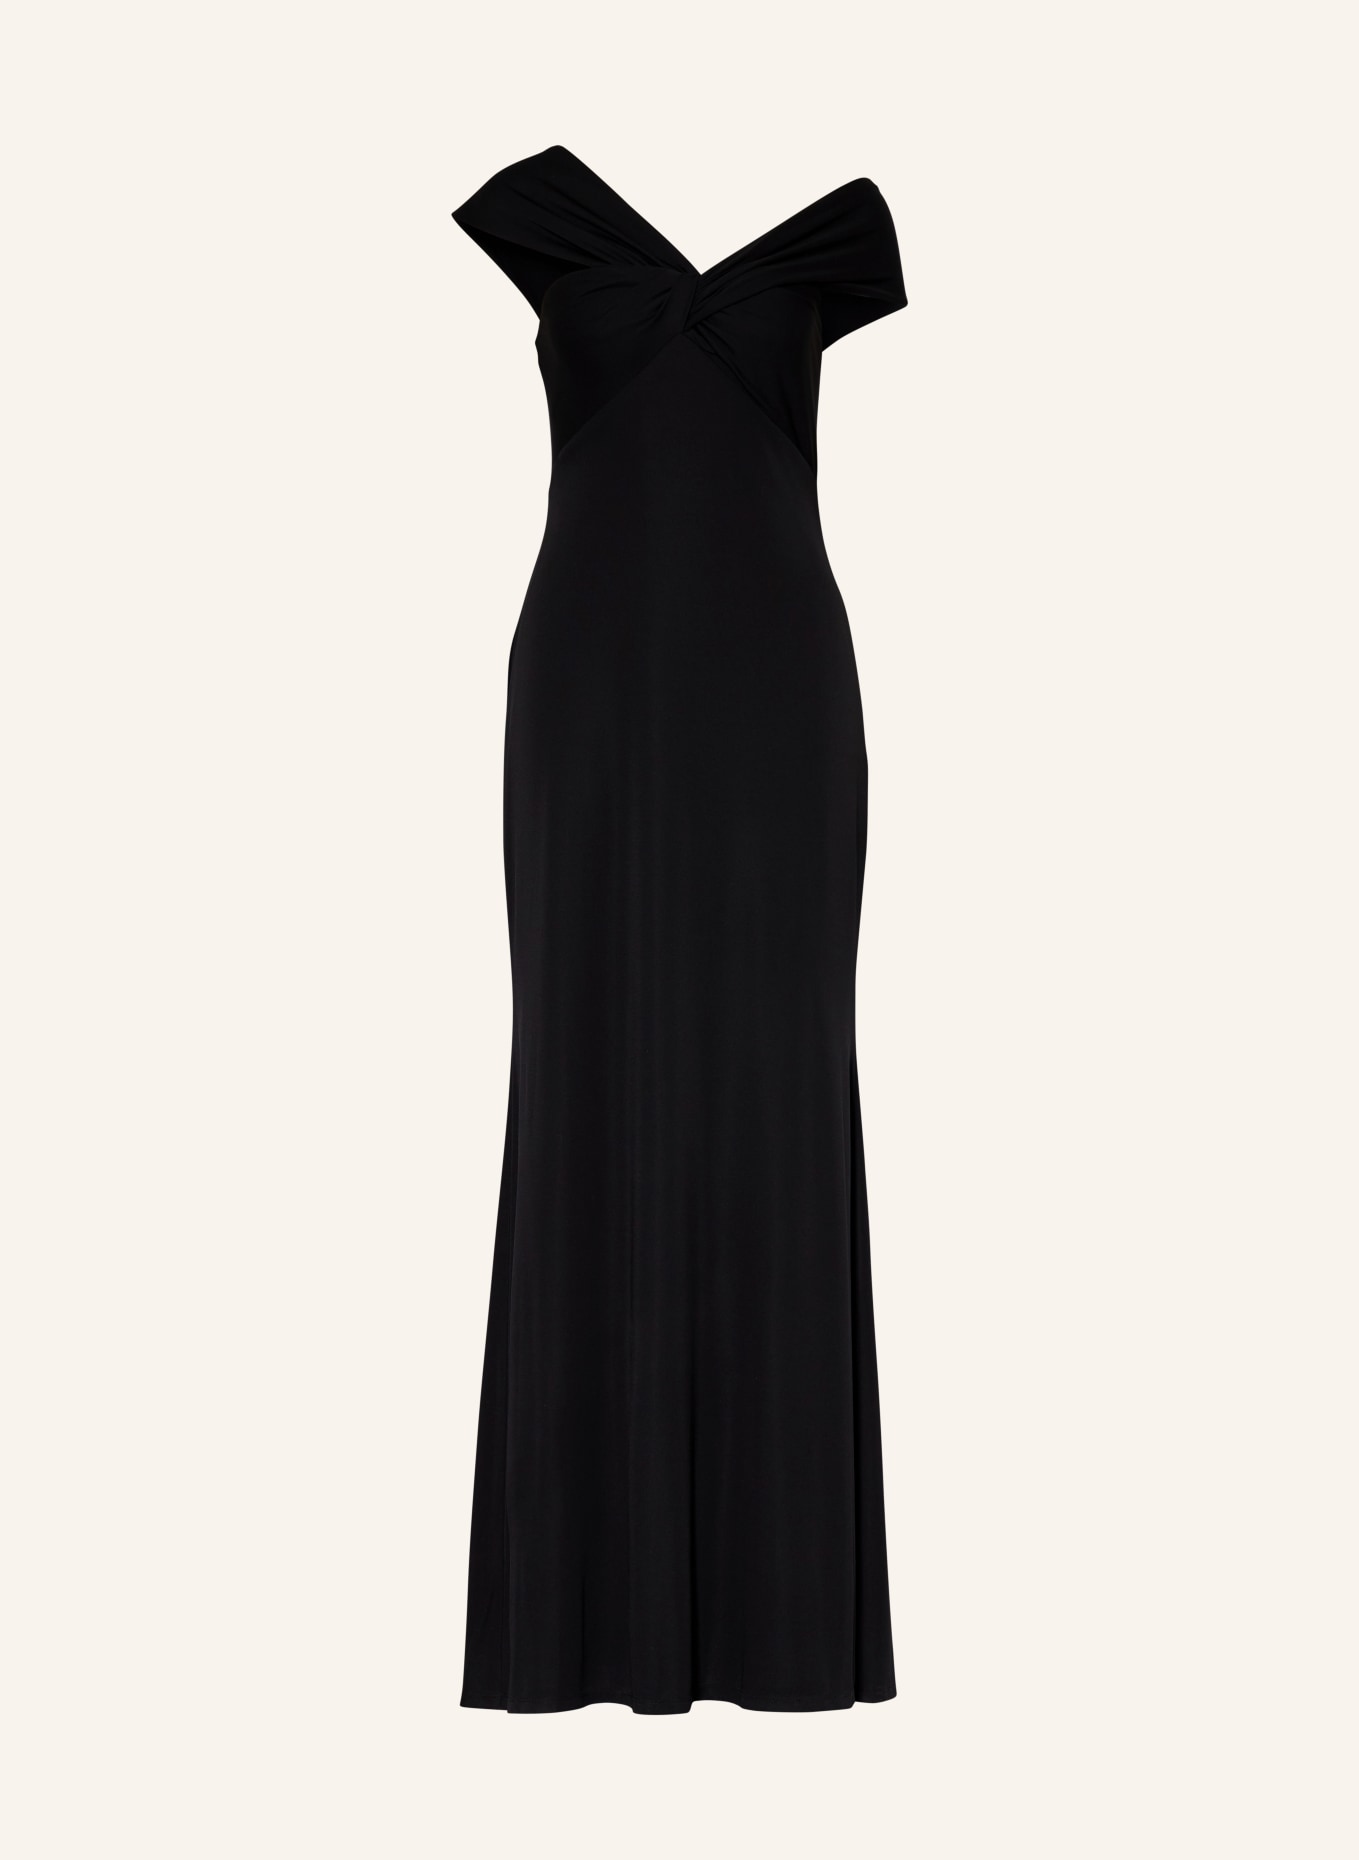 LAUREN RALPH LAUREN Evening dress, Color: BLACK (Image 1)